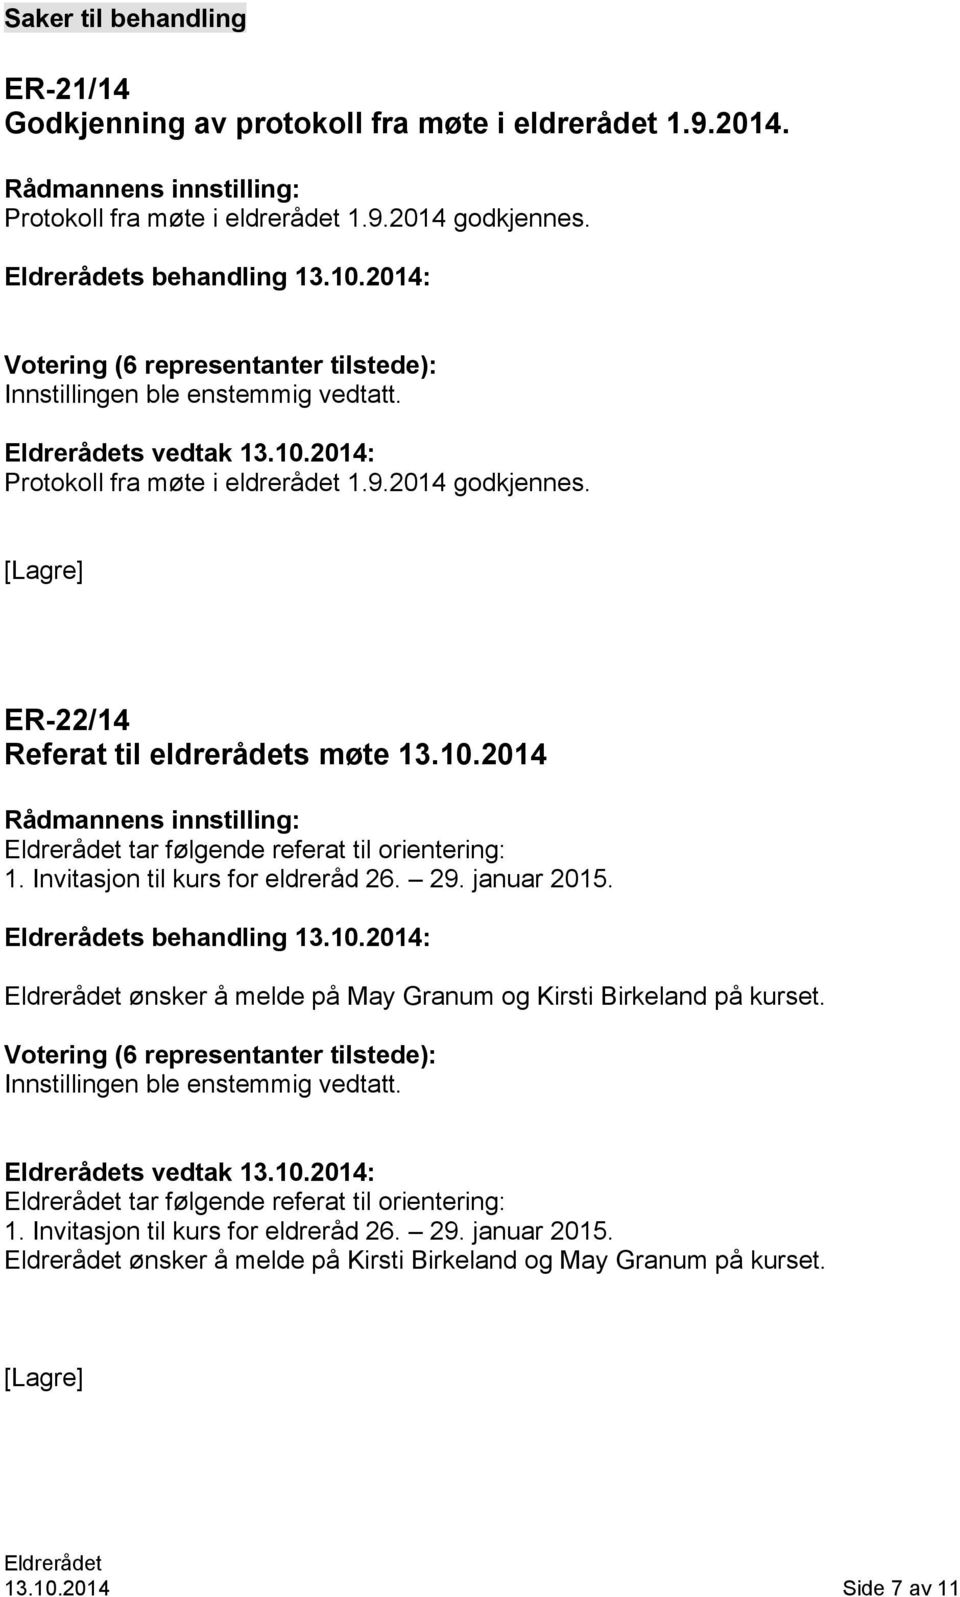 Invitasjon til kurs for eldreråd 26. 29. januar 2015. s behandling 13.10.2014: ønsker å melde på May Granum og Kirsti Birkeland på kurset.